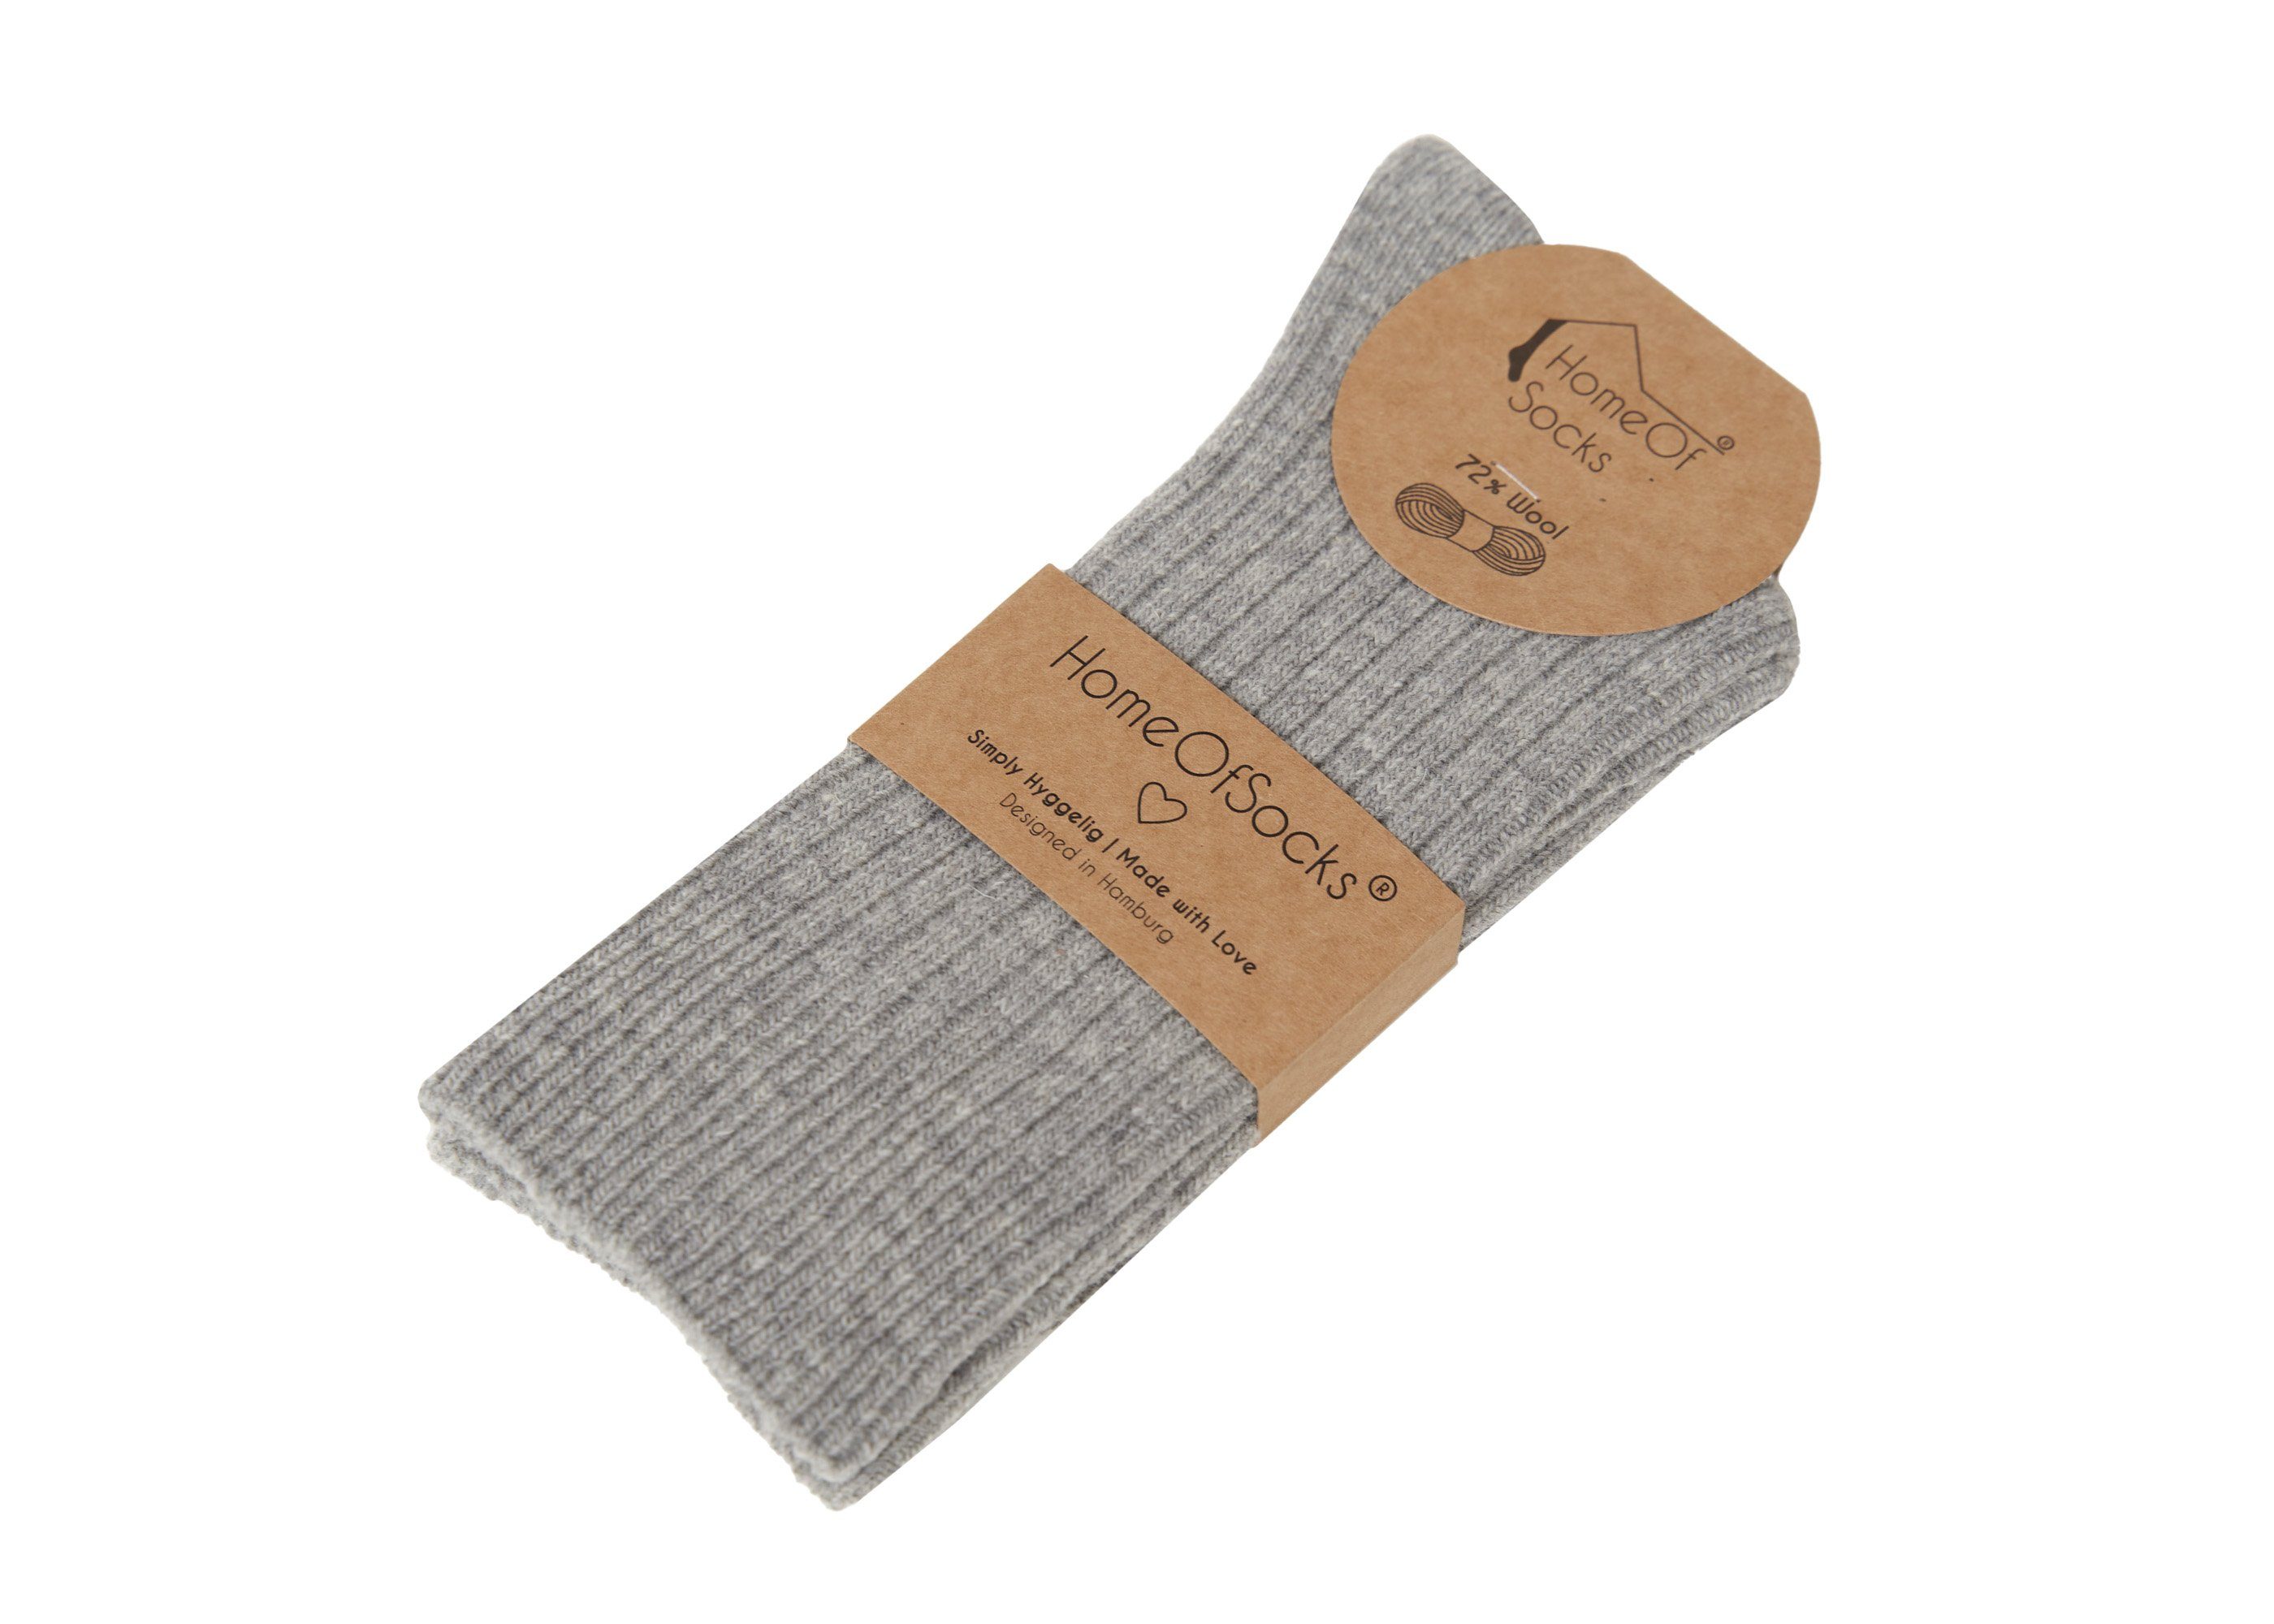 Bunt Bunte HomeOfSocks mit Hochwertige Wollsocken Dünn Wollsocken Dünne Socken Grau Druckarm 72% Uni Wollanteil